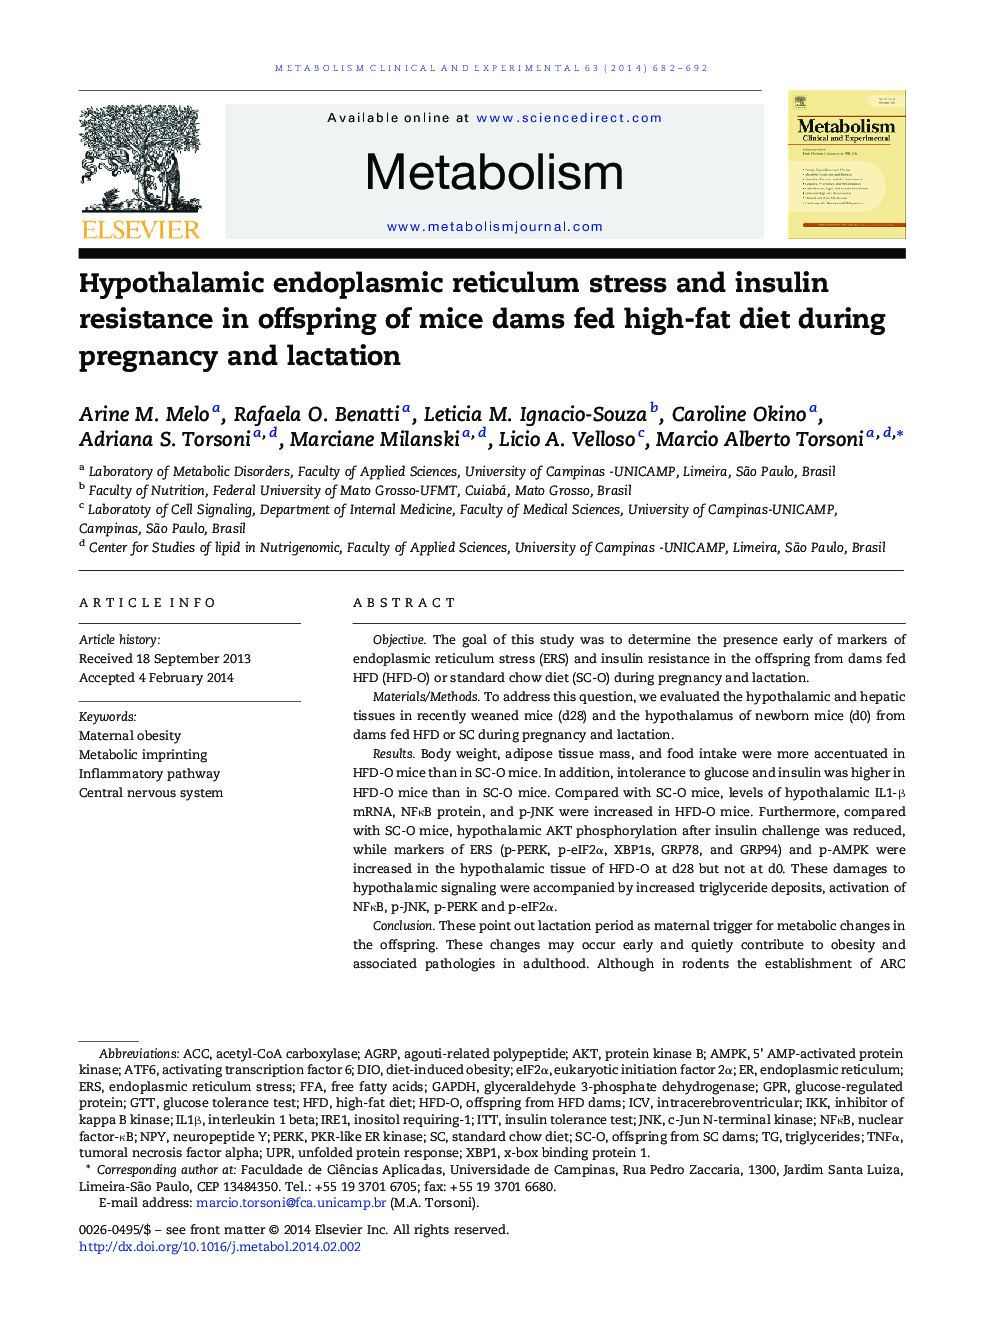 استرس انسولین اندوپلاسمی هیپوتالامم و مقاومت انسولین در پسران موش سوری که در دوران بارداری و شیردهی تغذیه می شوند 